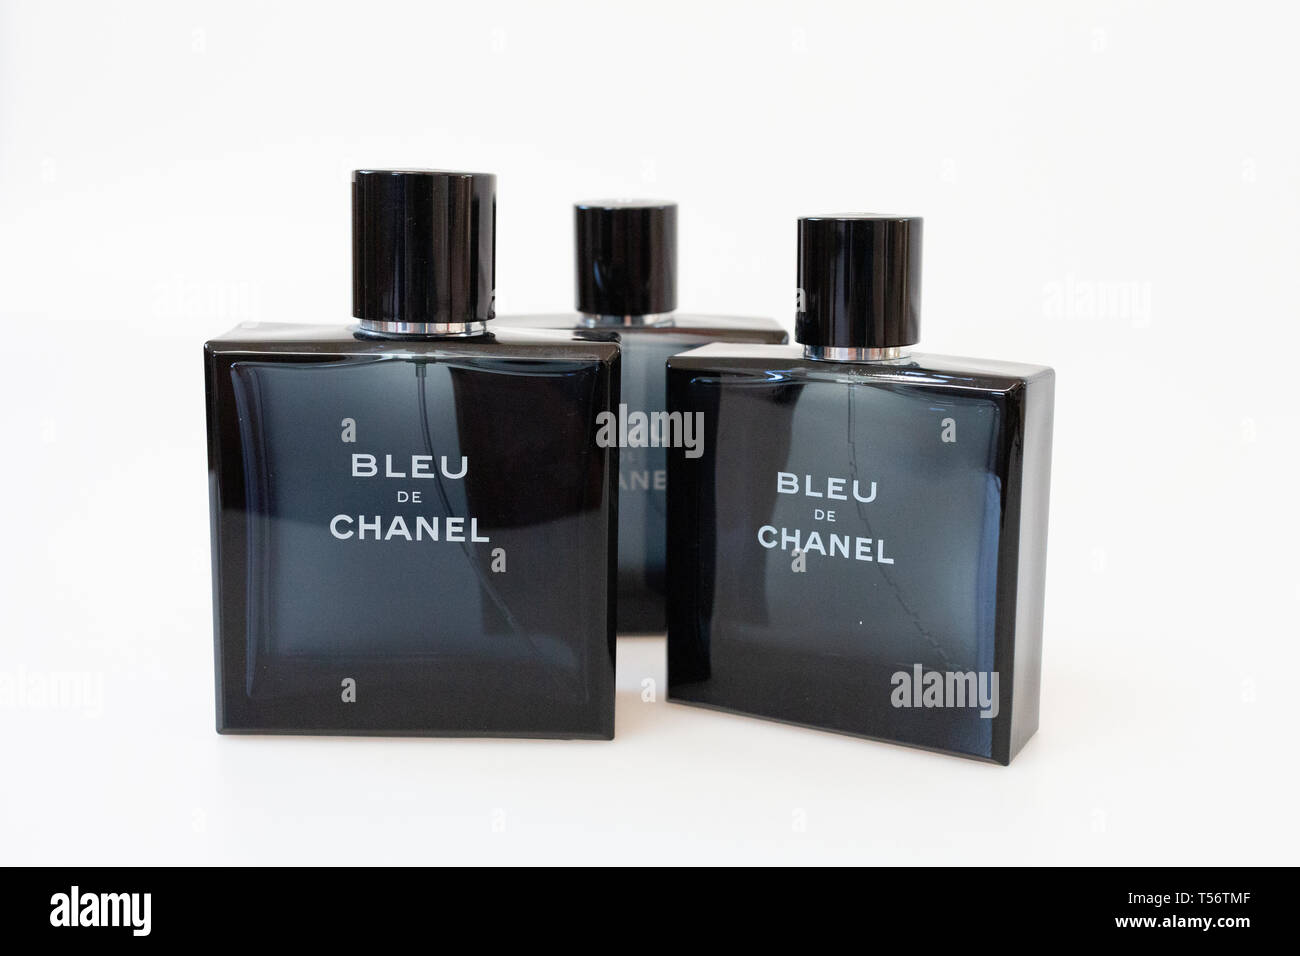 ArtStation - Bleu de Chanel Product Picture